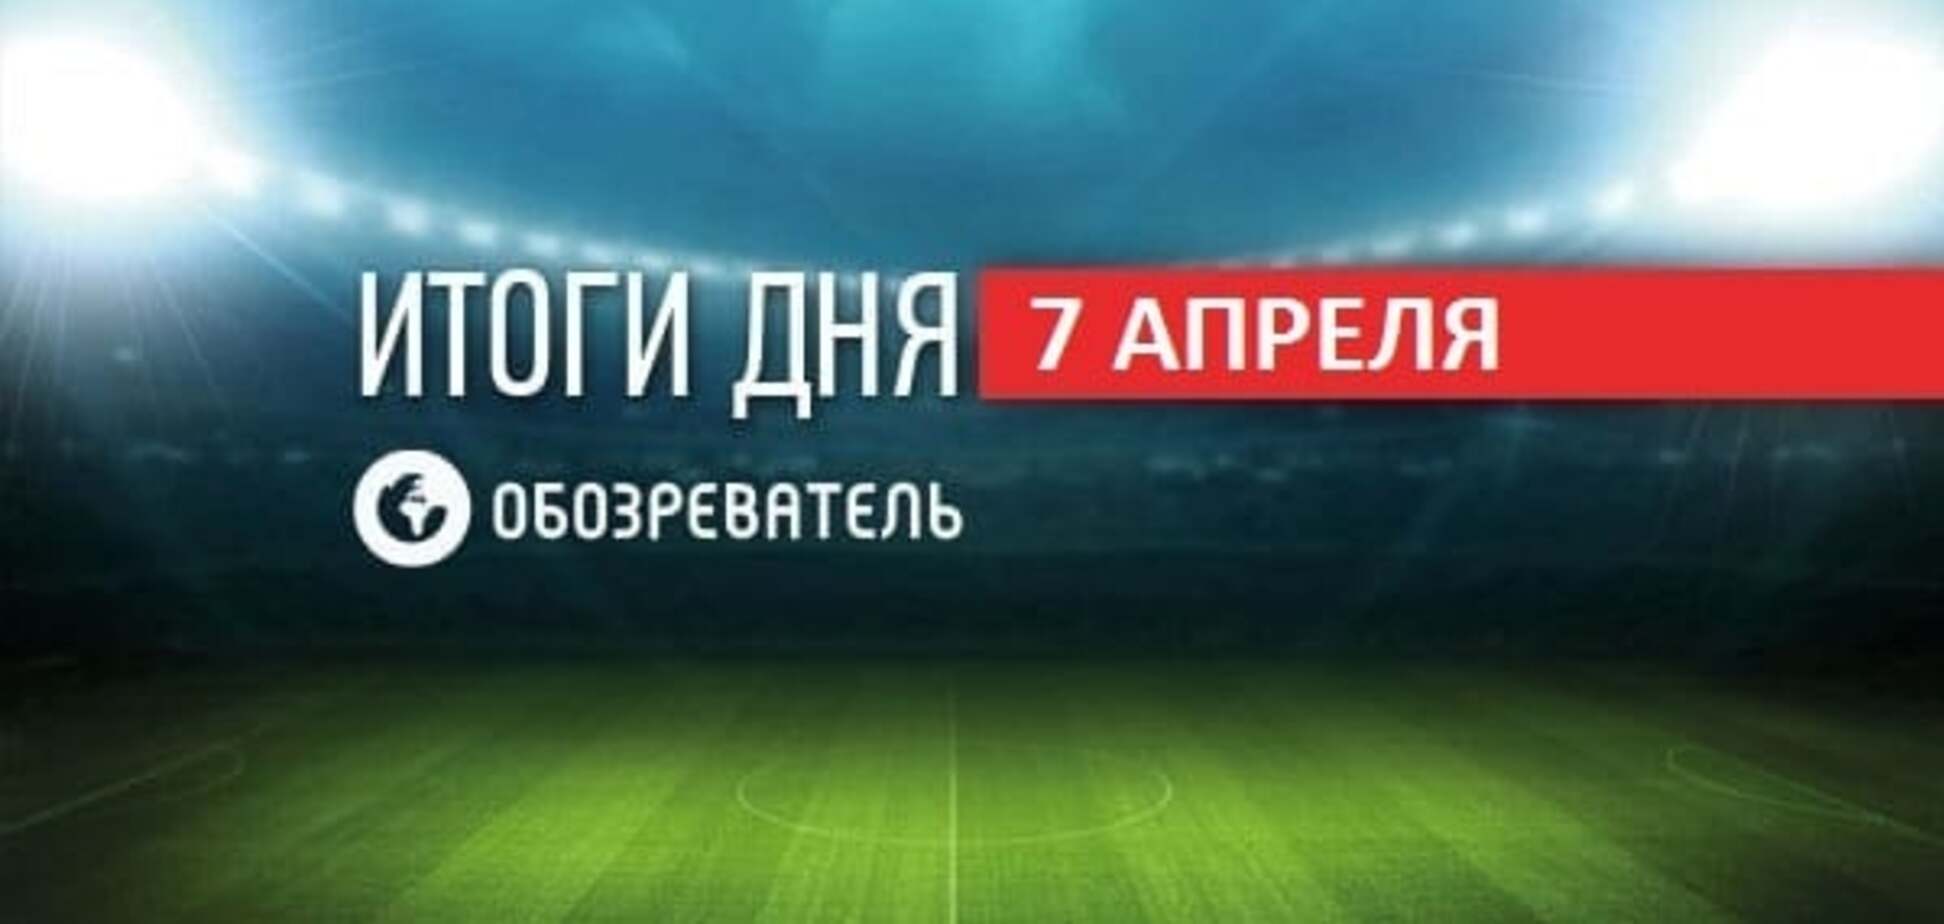 Луческу безразличен позор 'Динамо'. Спортивные итоги 7 апреля